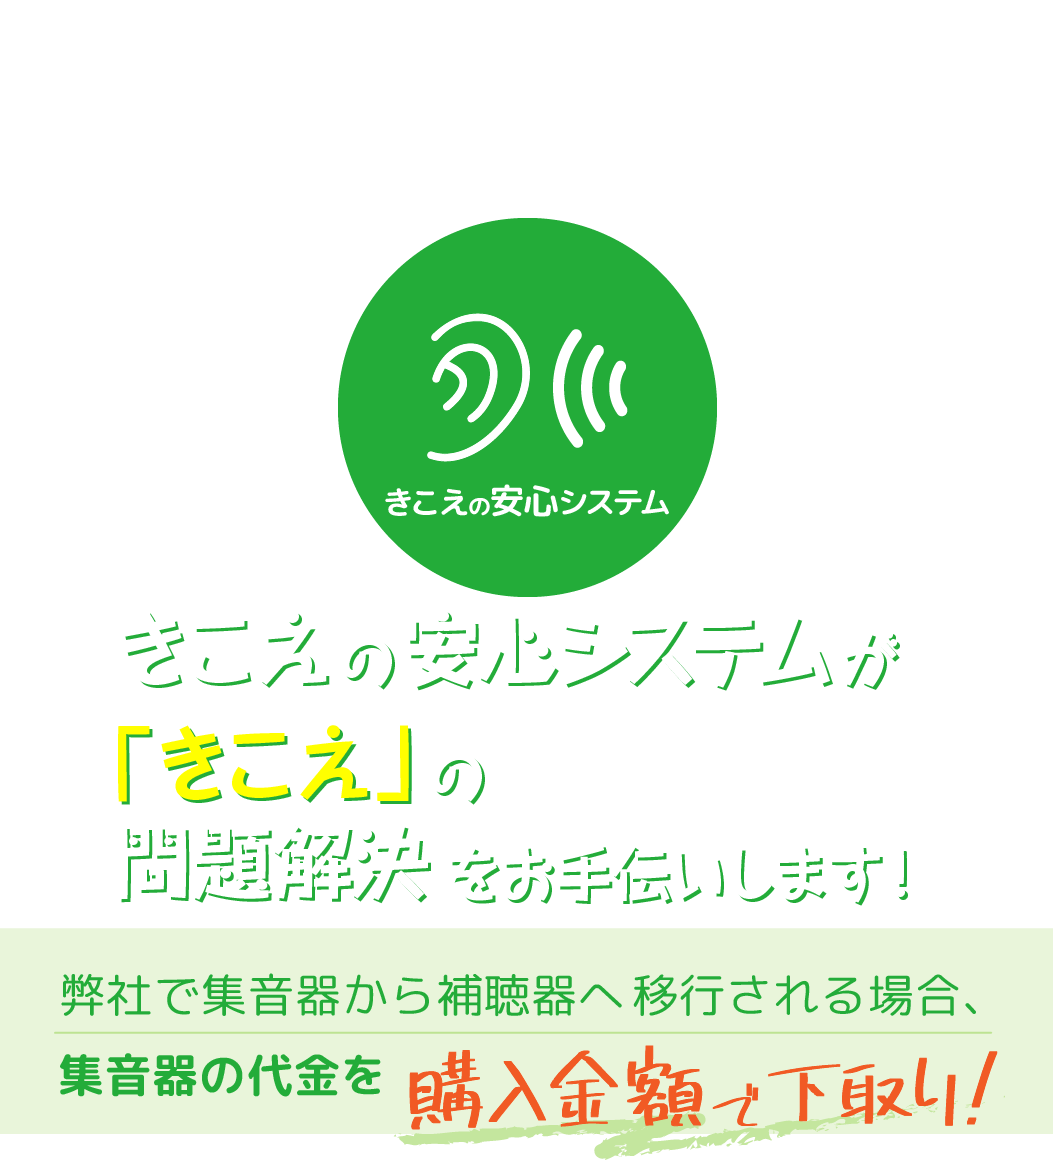 集音器を購入したい方へおすすめ。日本製の集音器。NEXTイノベーションが運営する、きこえの安心システムがきこえの問題解決をお手伝いします。